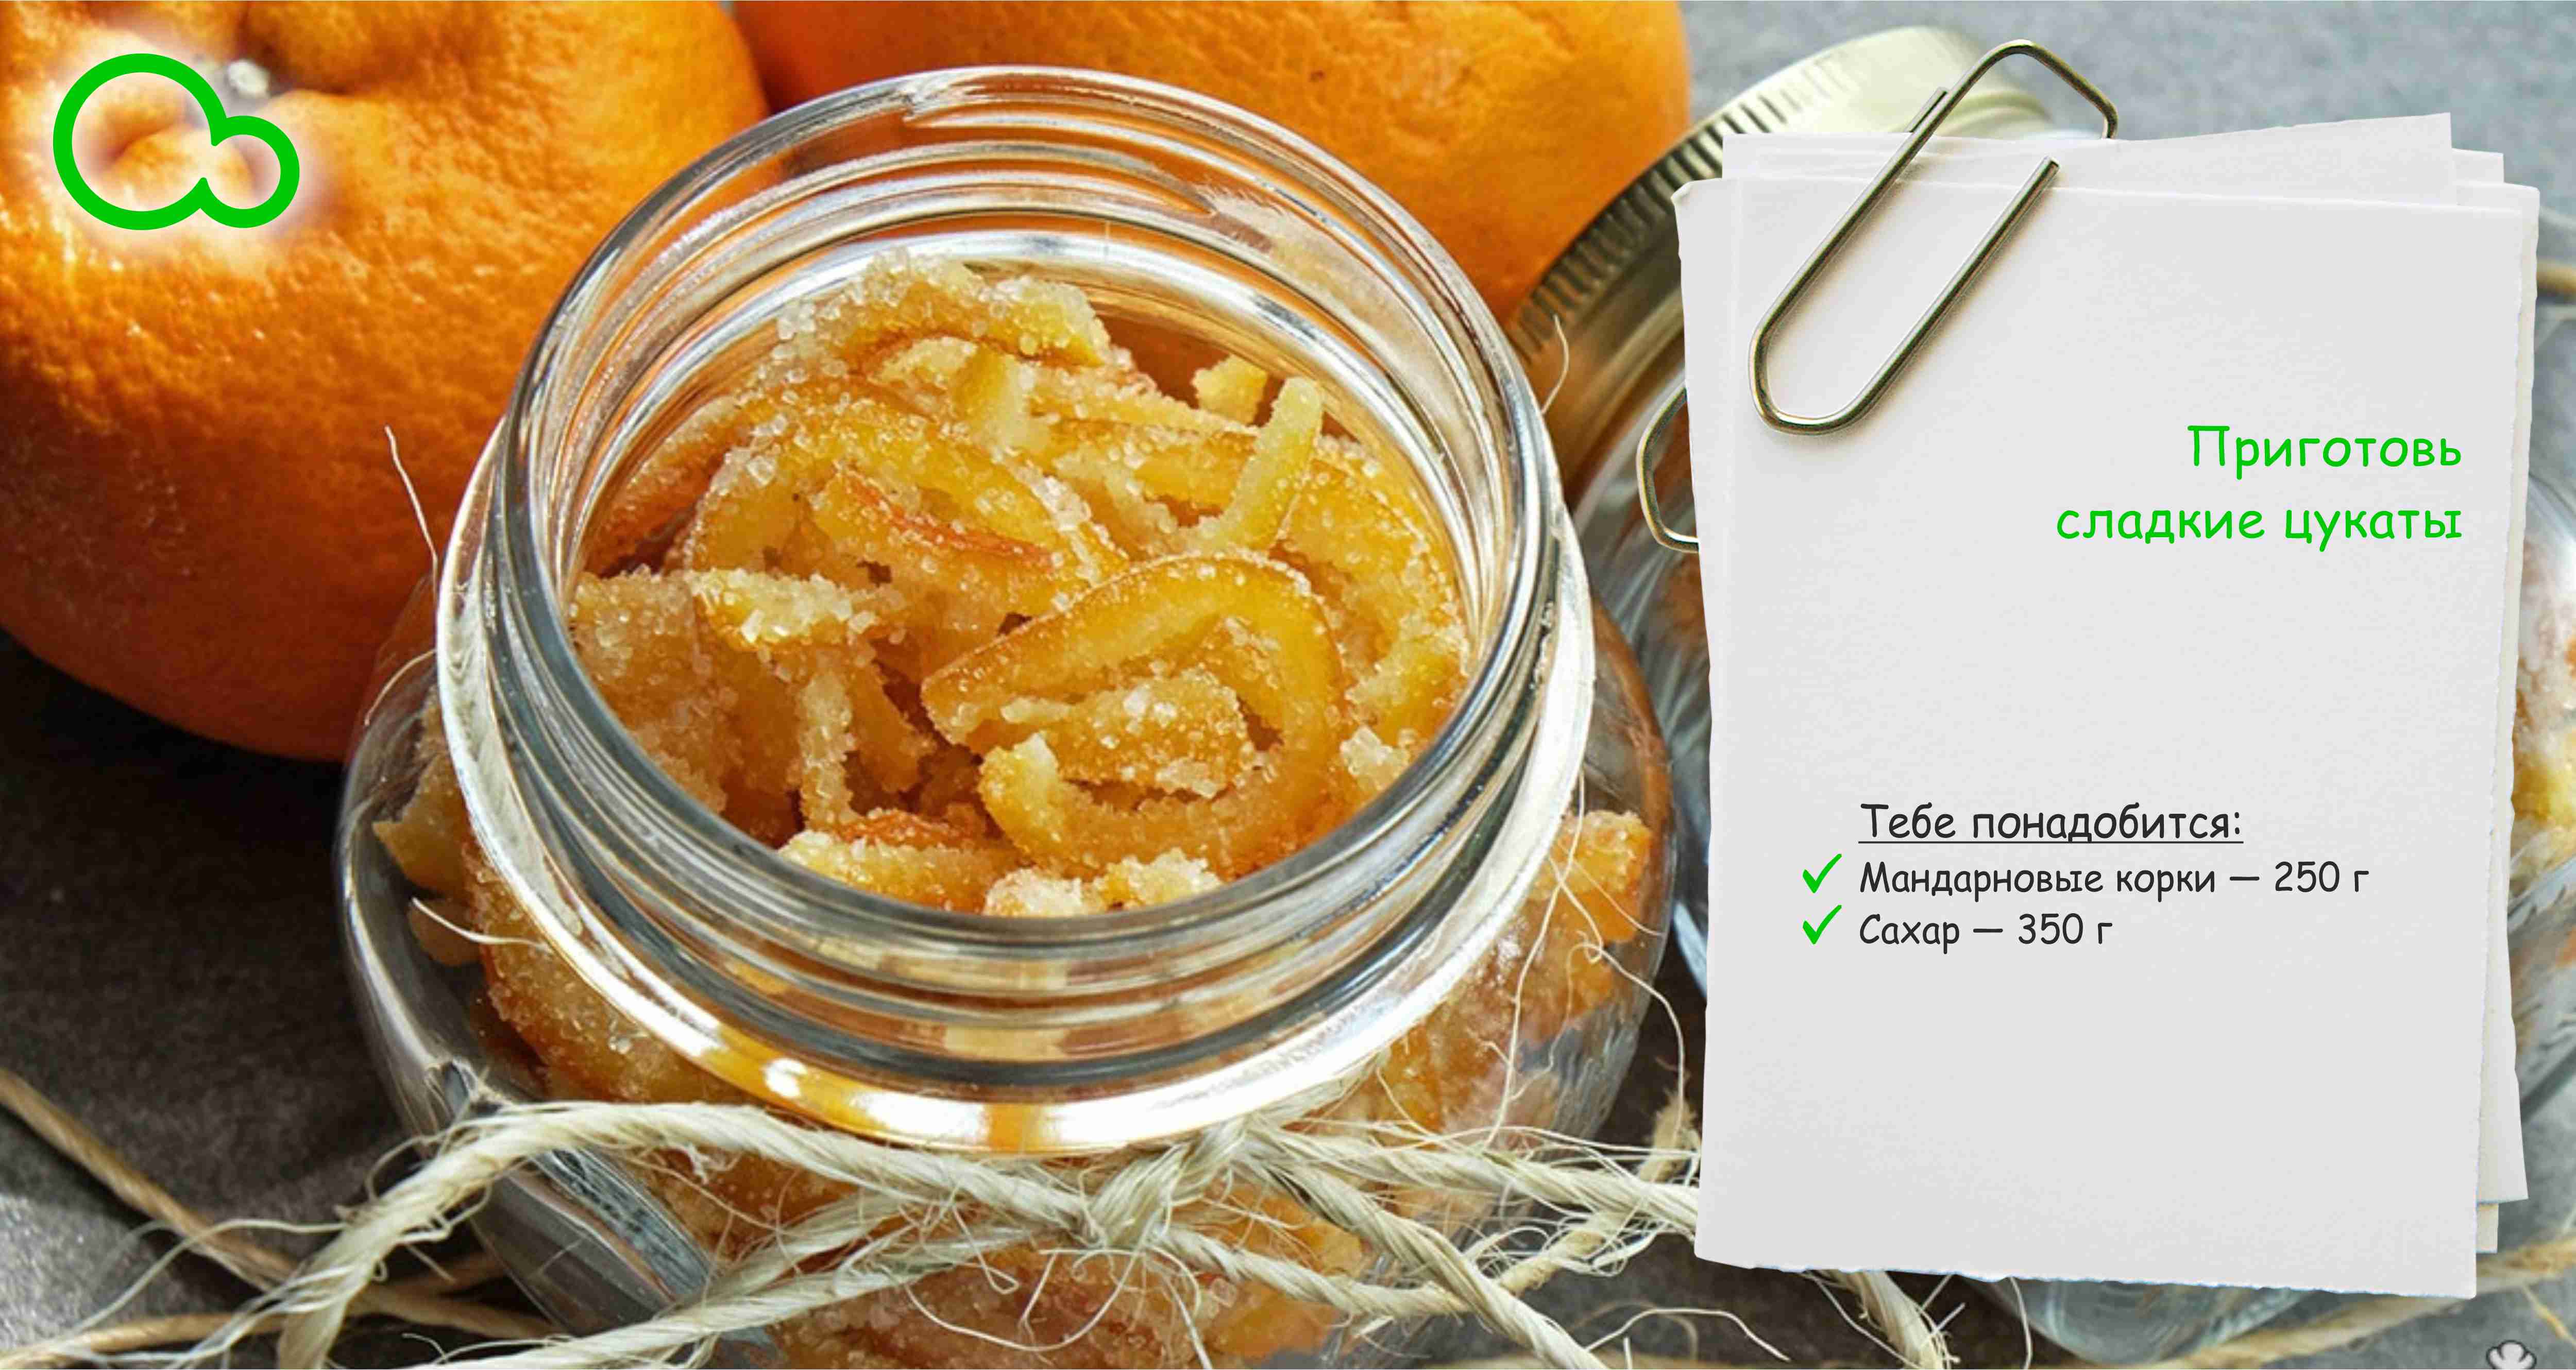 Как сделать цукаты из мандариновых корок: разные варианты приготовления